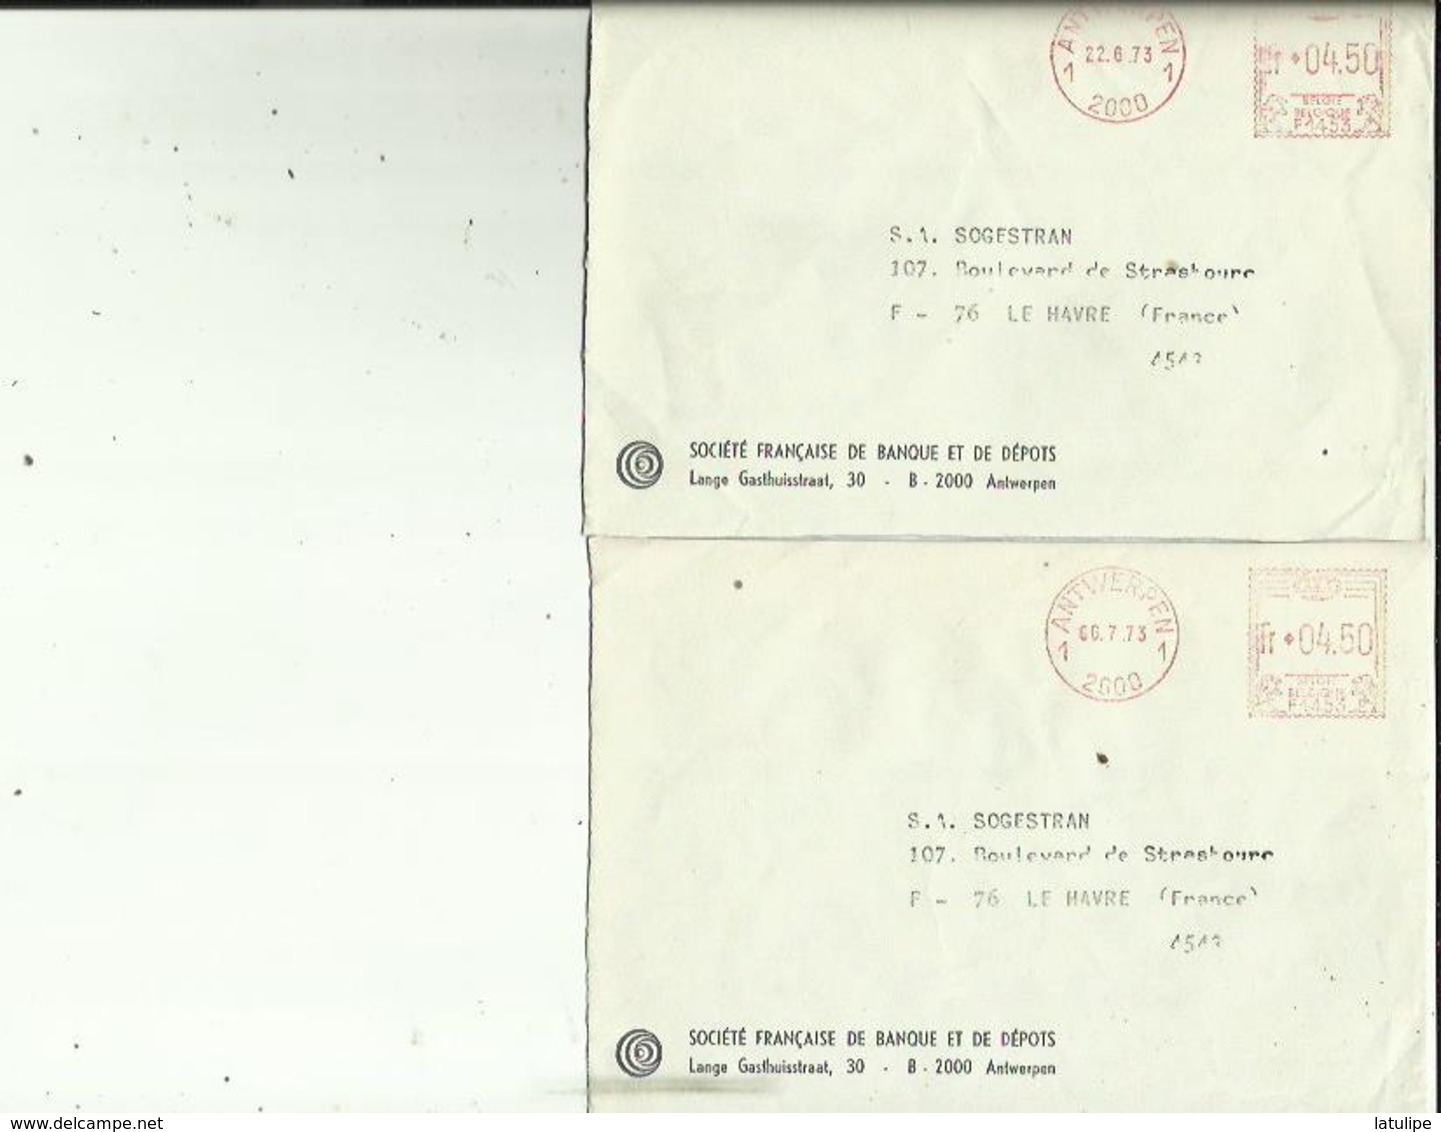 2  Enveloppes De Sté  Française De Depot A ANVERS   Adressé A  S A  SOGESTRAM Au HAVRE 76 Le 22-6 Et 6-7 73 - Banco & Caja De Ahorros